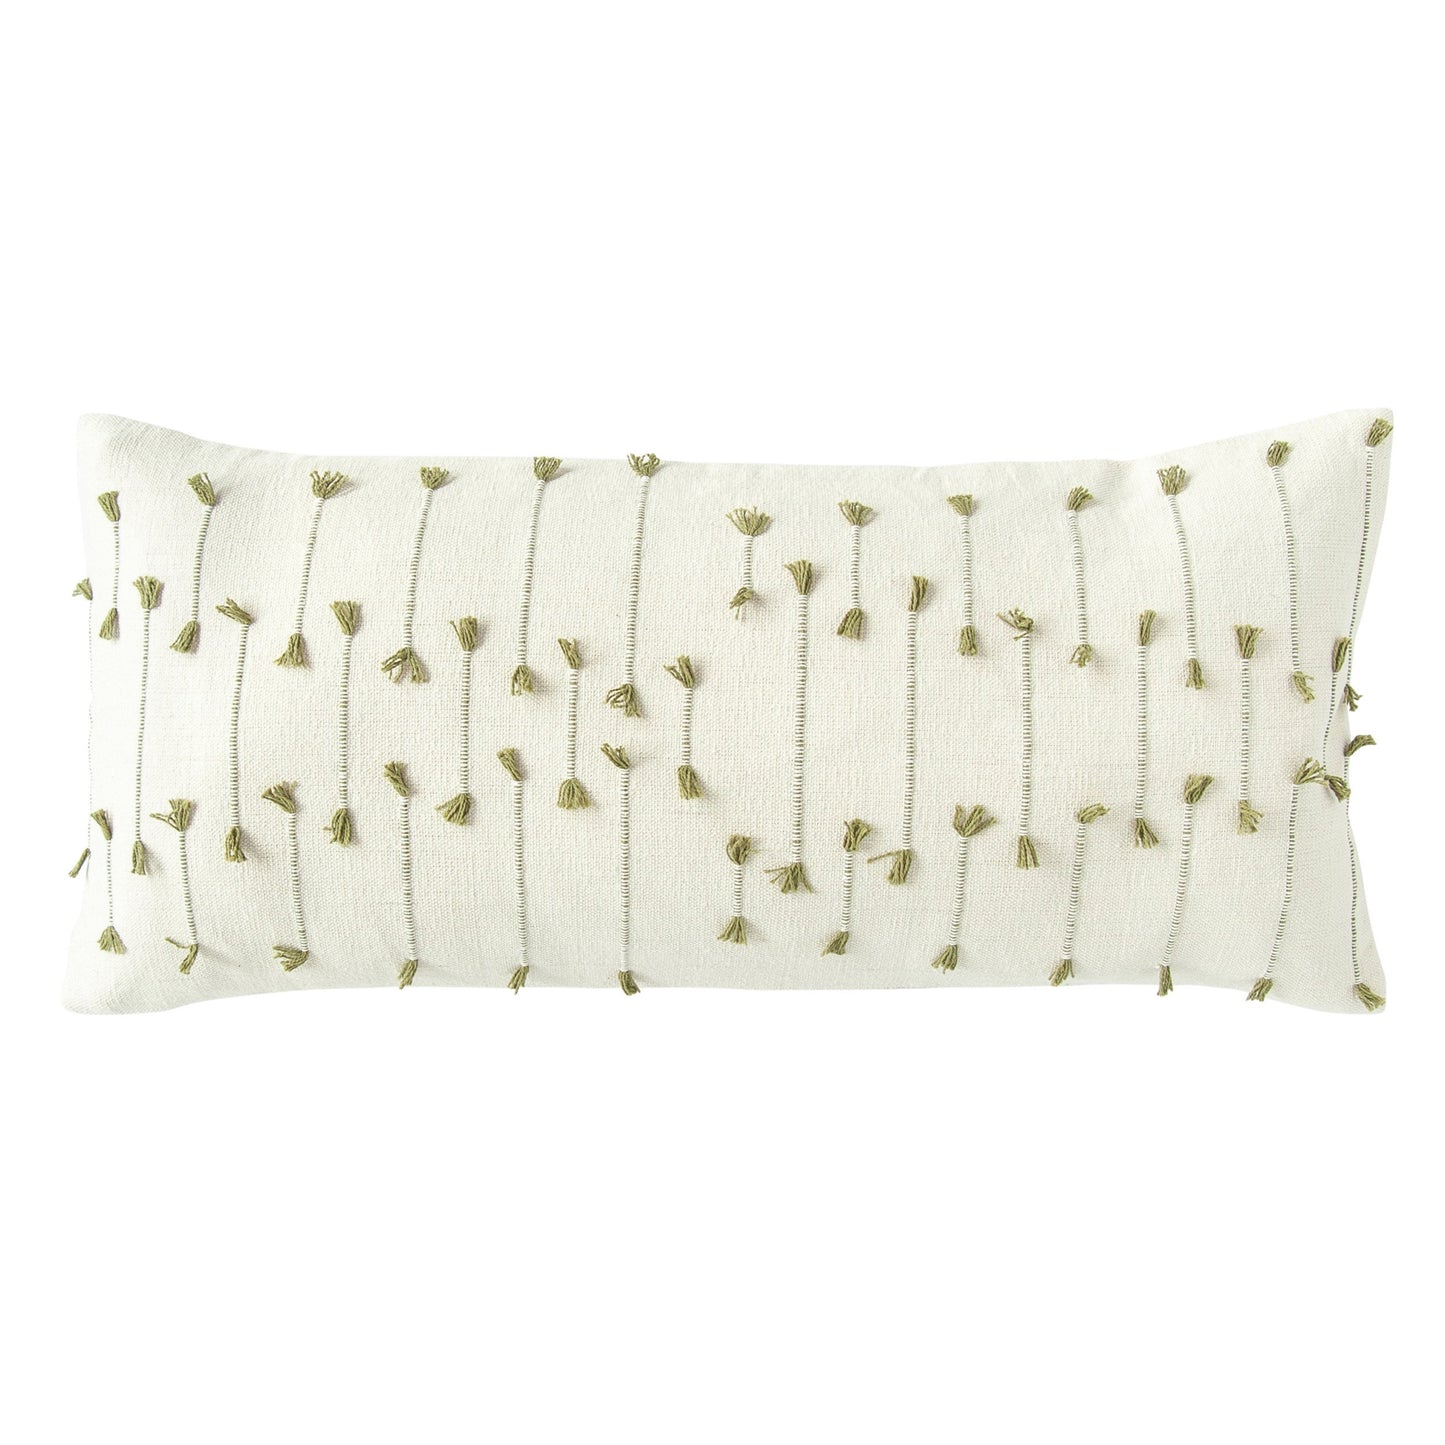 Hand Woven Lumbar Pillow With Woven Tassels